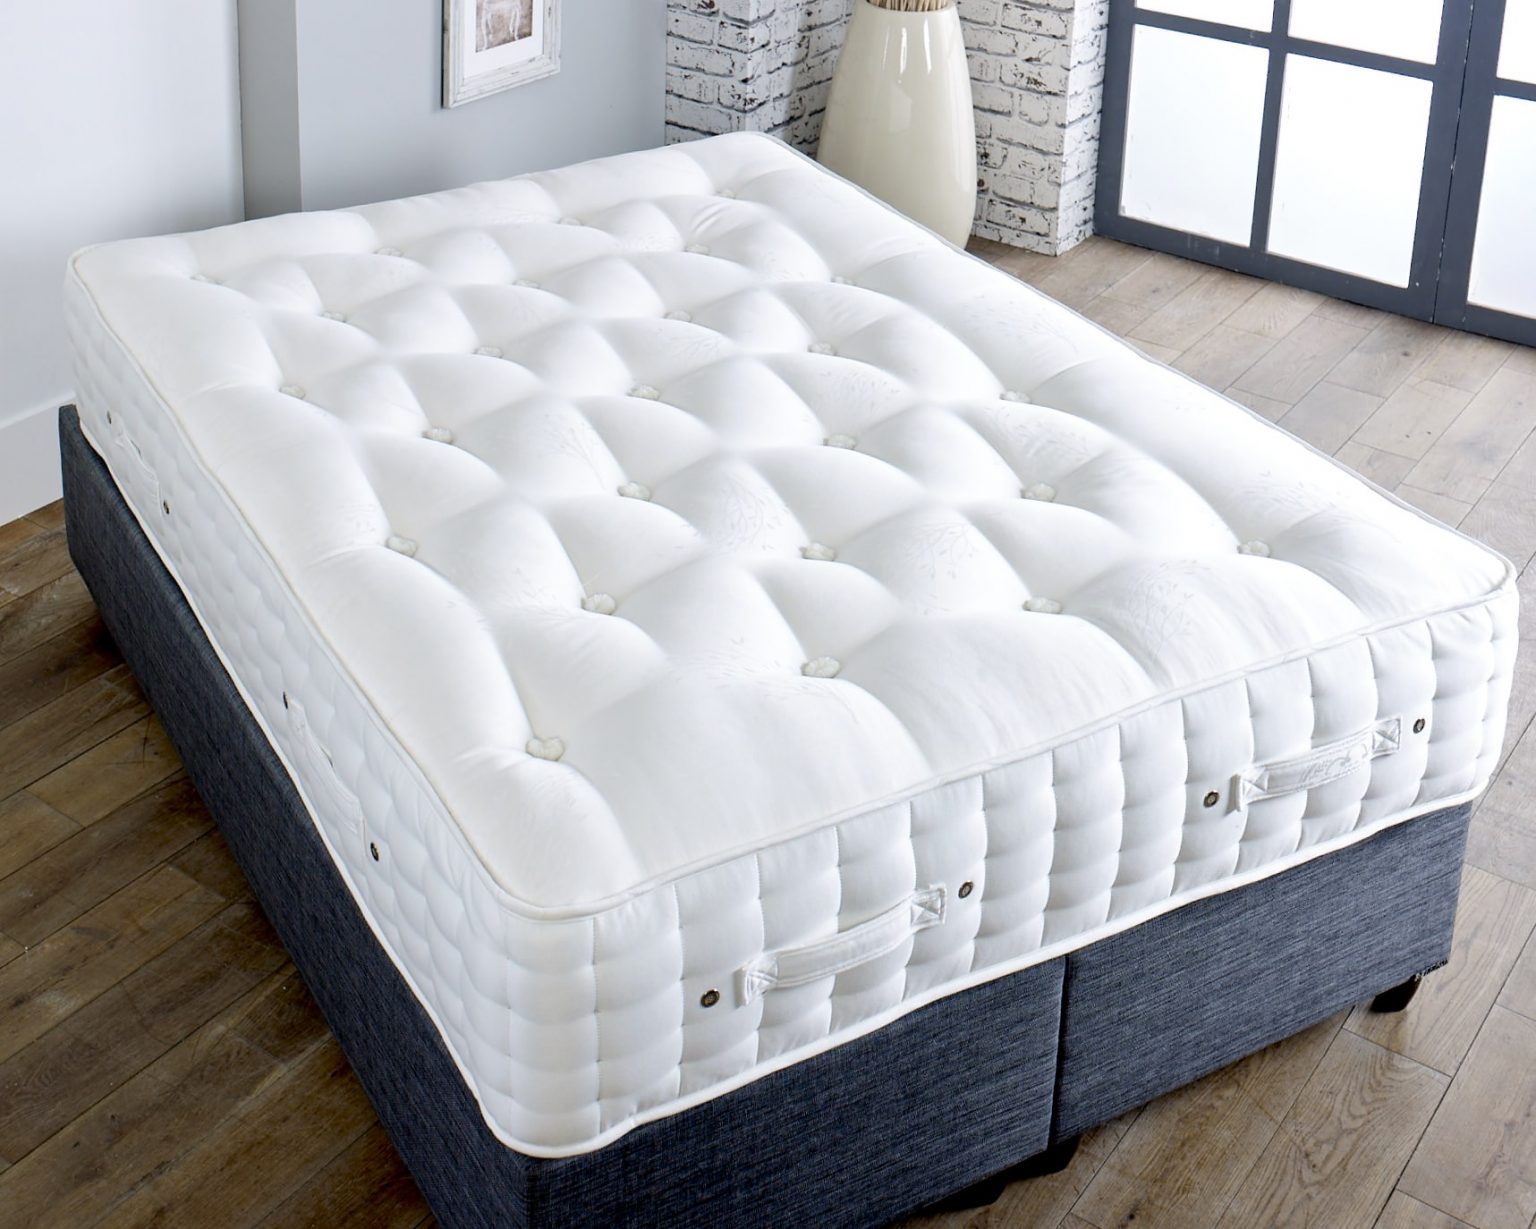 pocket sprung mattresses for sale